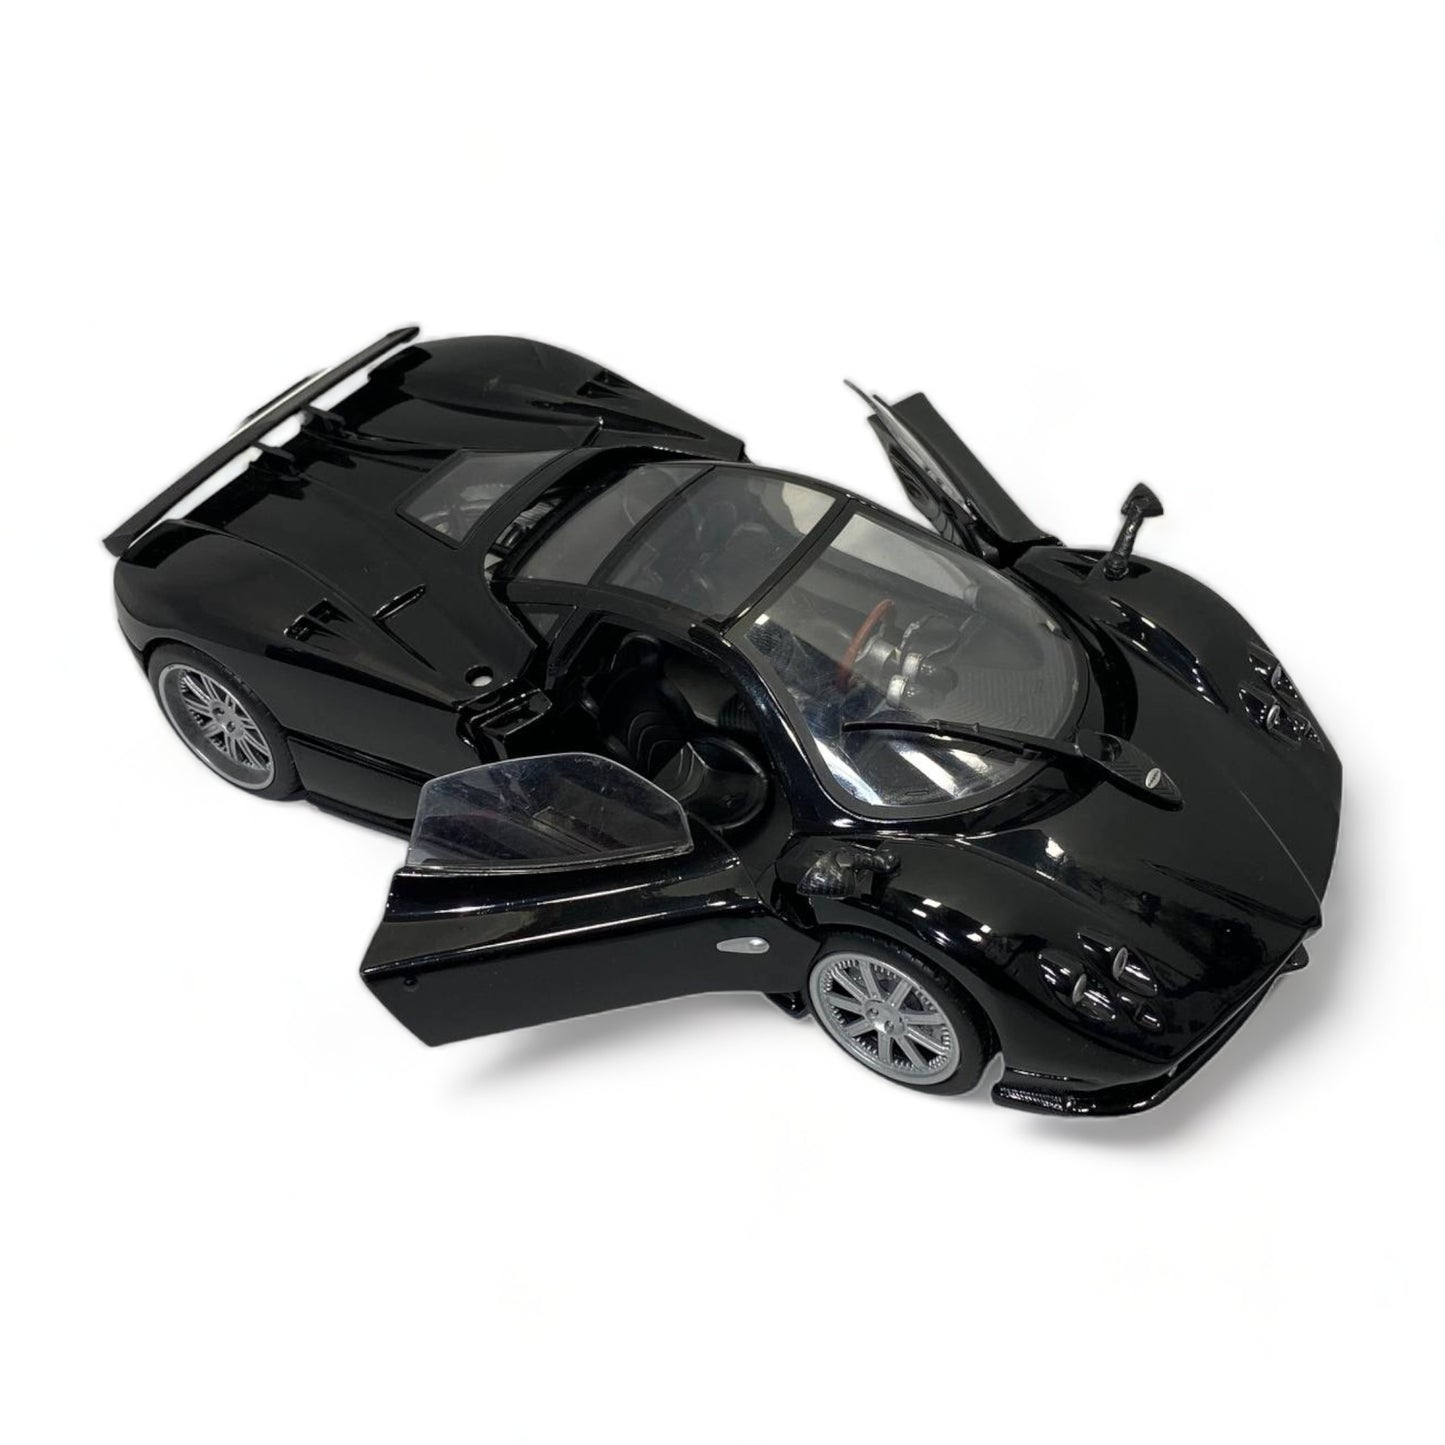 Motor Max Pagani ZONDA F BLACK 1/18